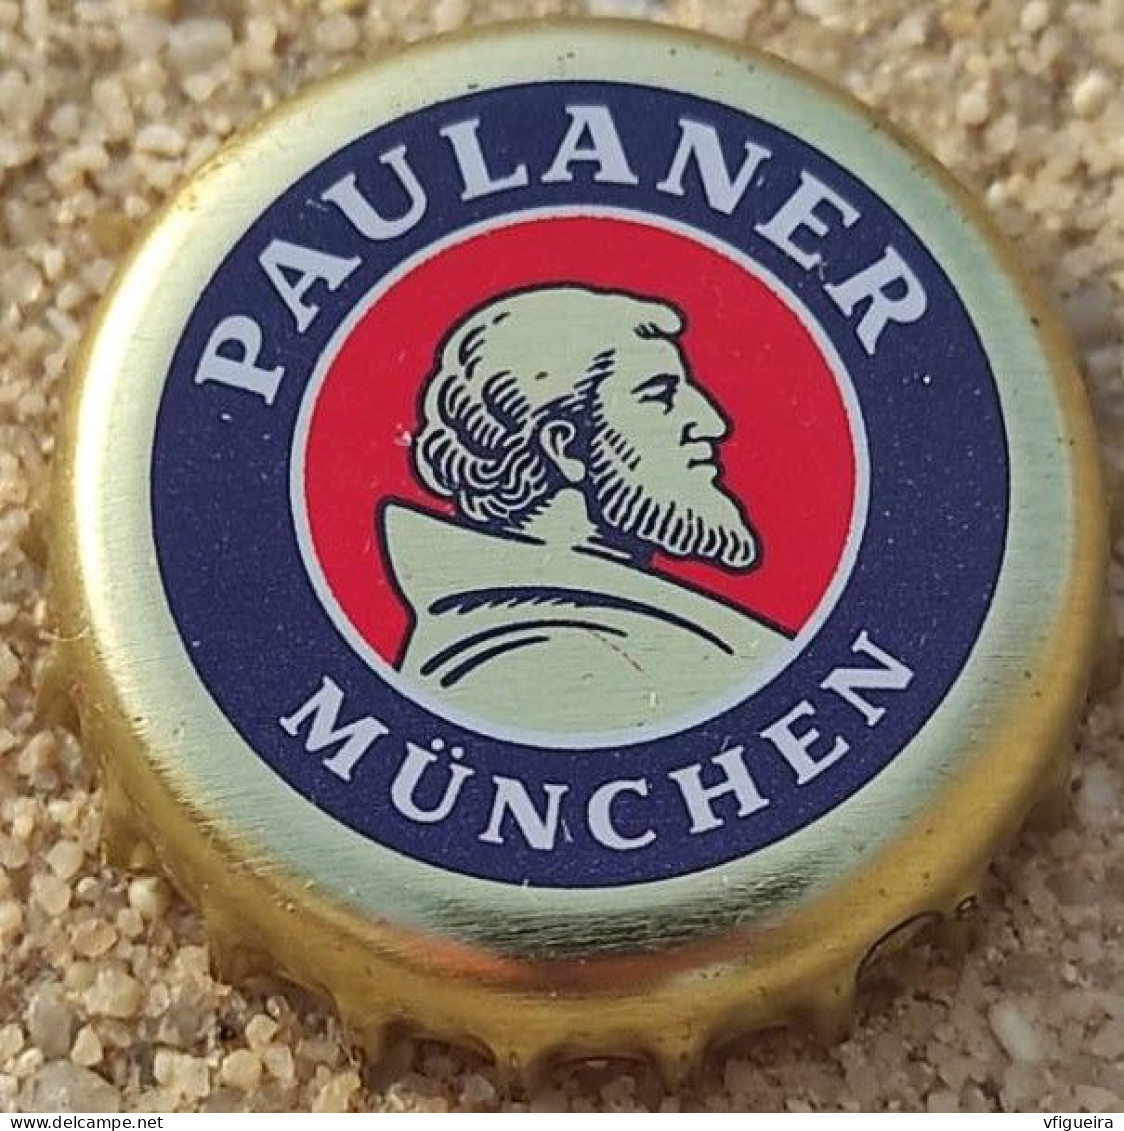 Allemagne Capsule Bière Beer Crown Cap Paulaner München SU - Beer